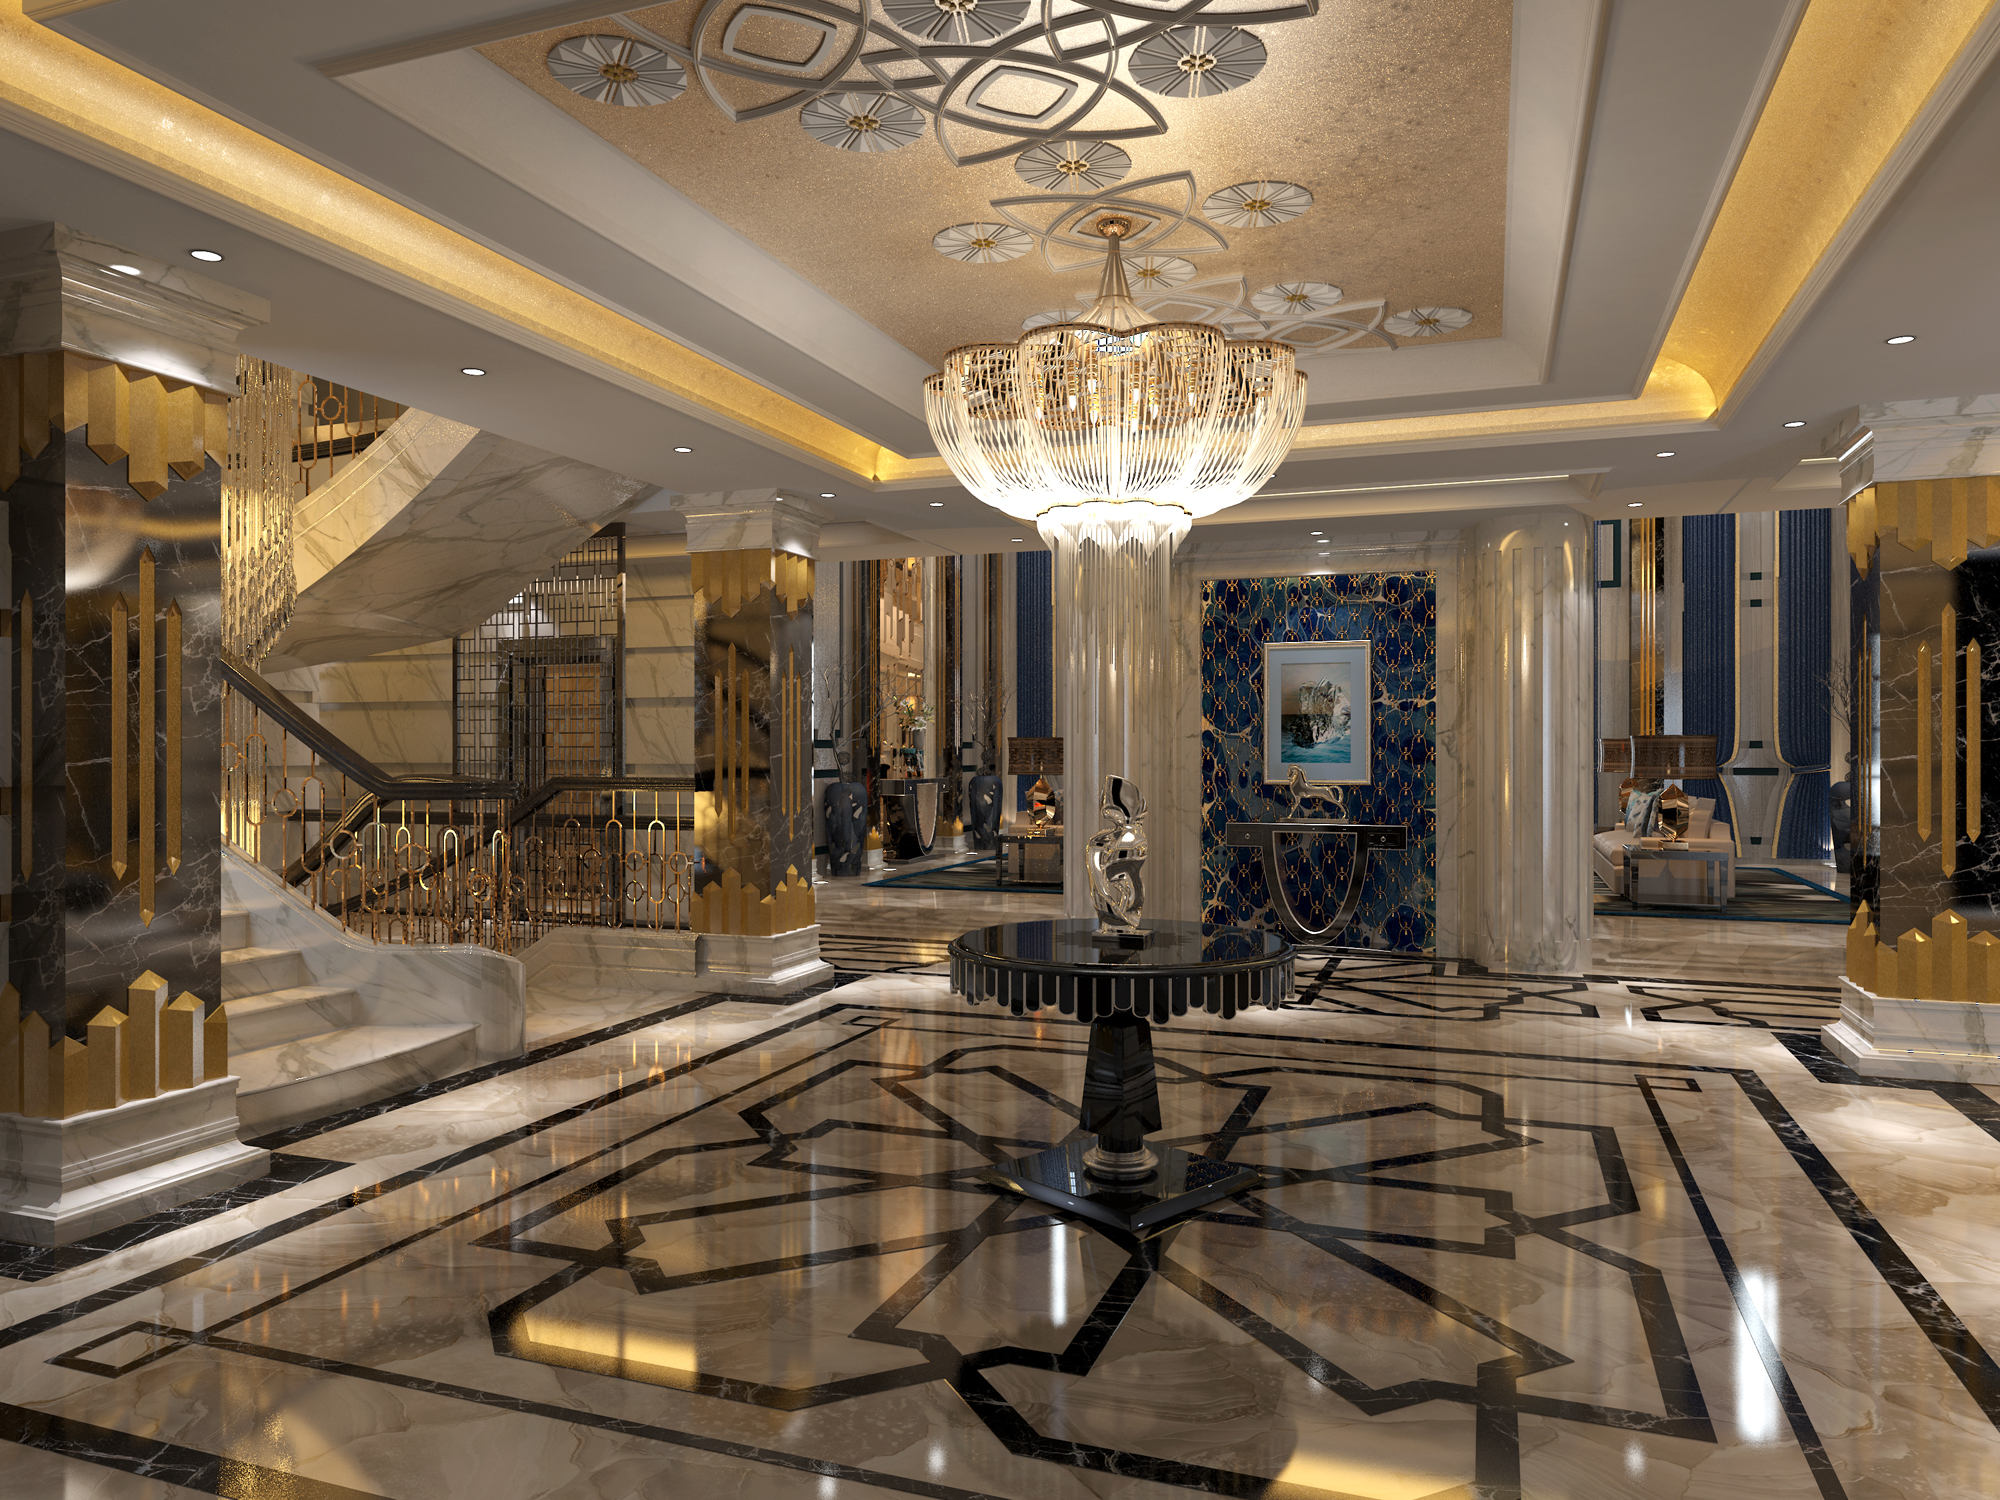 欧式 古典 原创国际 品质墅装 全案设计 楼梯图片来自原创国际别墅装饰在世界湾的分享